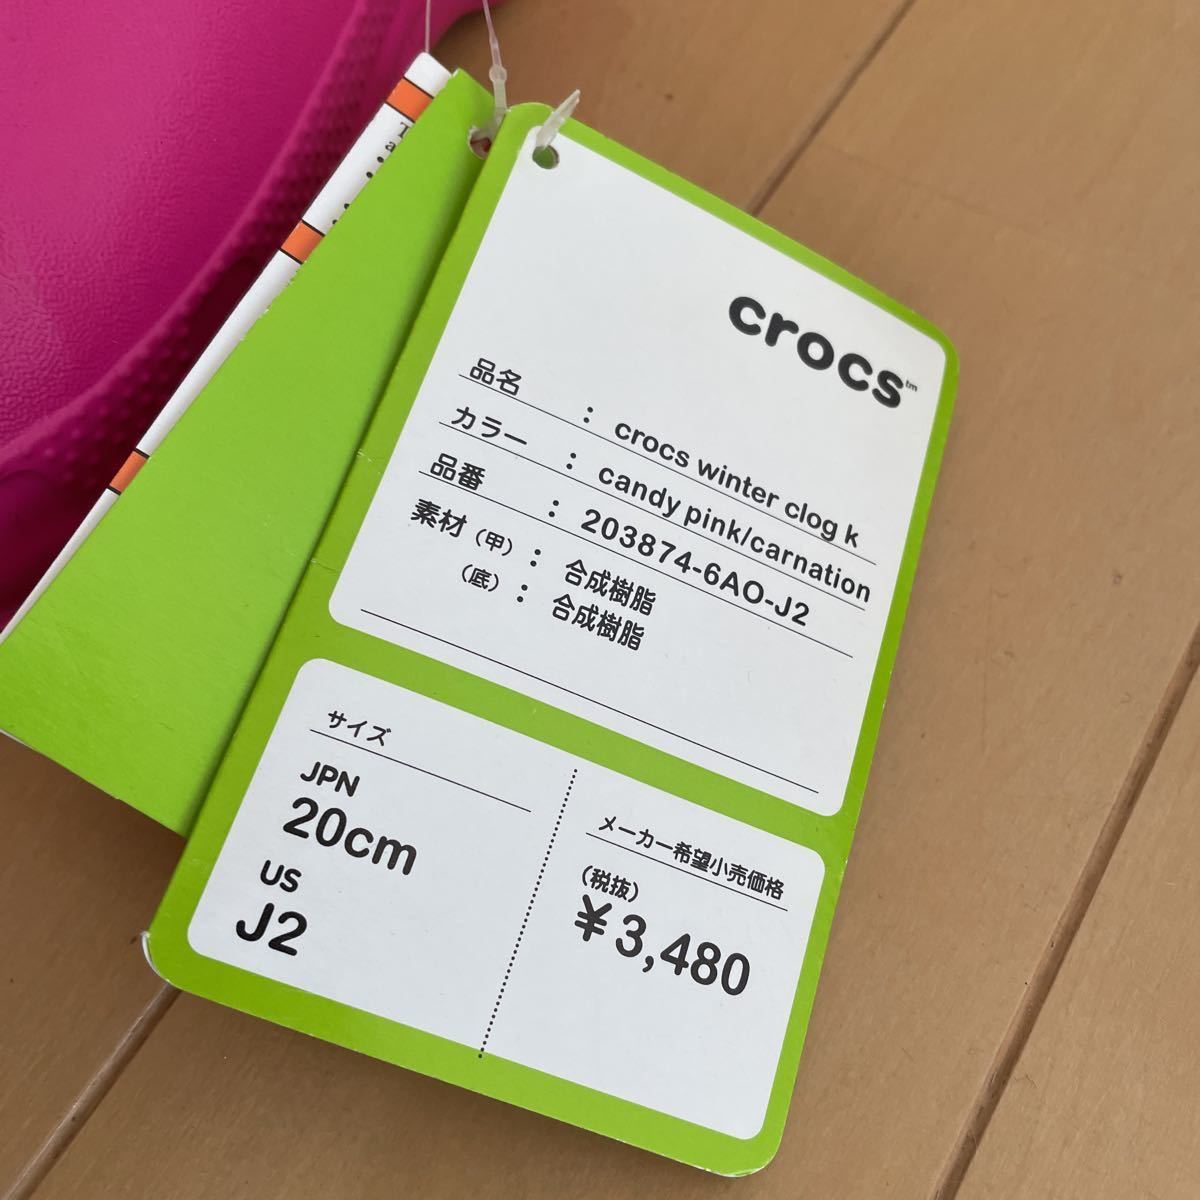  включая доставку с биркой crocs winter clog k Crocs боа имеется сандалии J2/4 20cm примерно розовый бесплатная доставка 